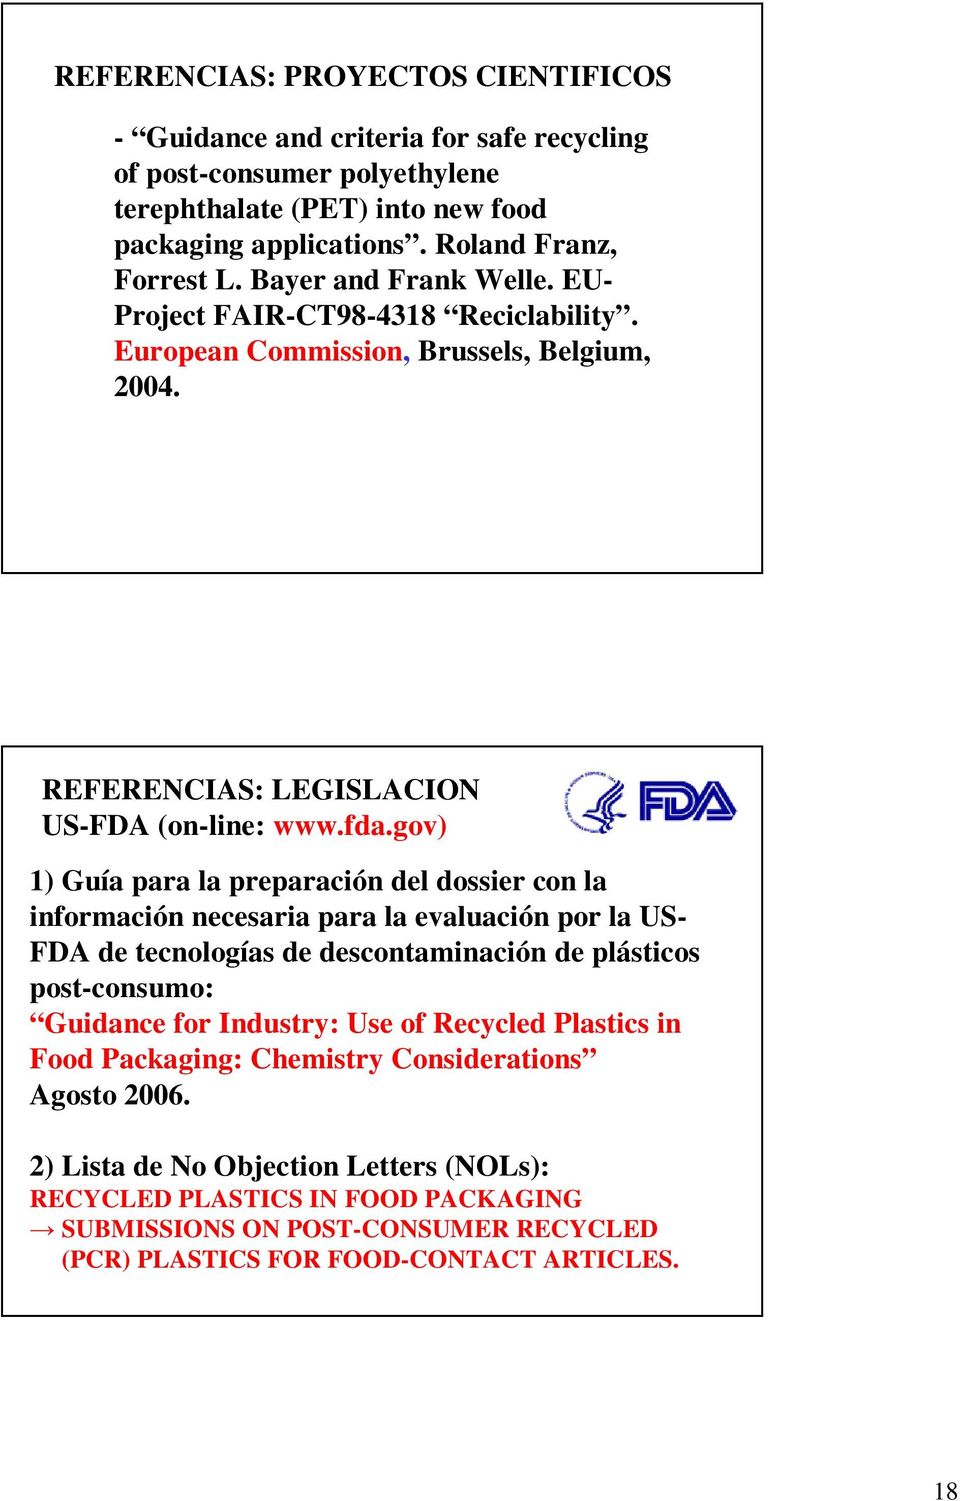 gov) 1) Guía para la preparación del dossier con la información necesaria para la evaluación por la US- FDA de tecnologías de descontaminación de plásticos post-consumo: Guidance for Industry: Use